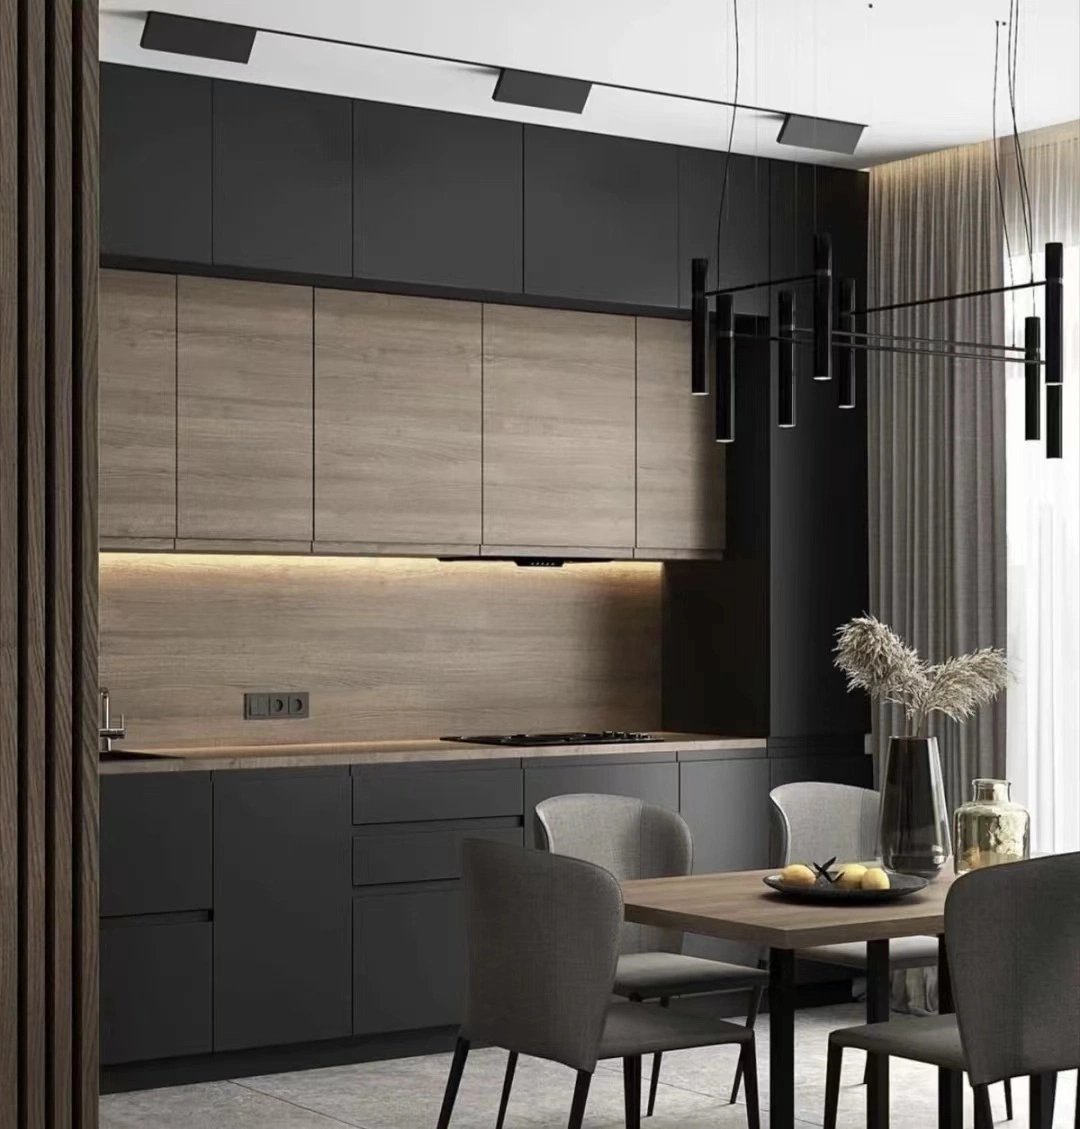 Diseño de Muebles de cocina moderna para utilizar una pequeña cocina gabinetes de cocina